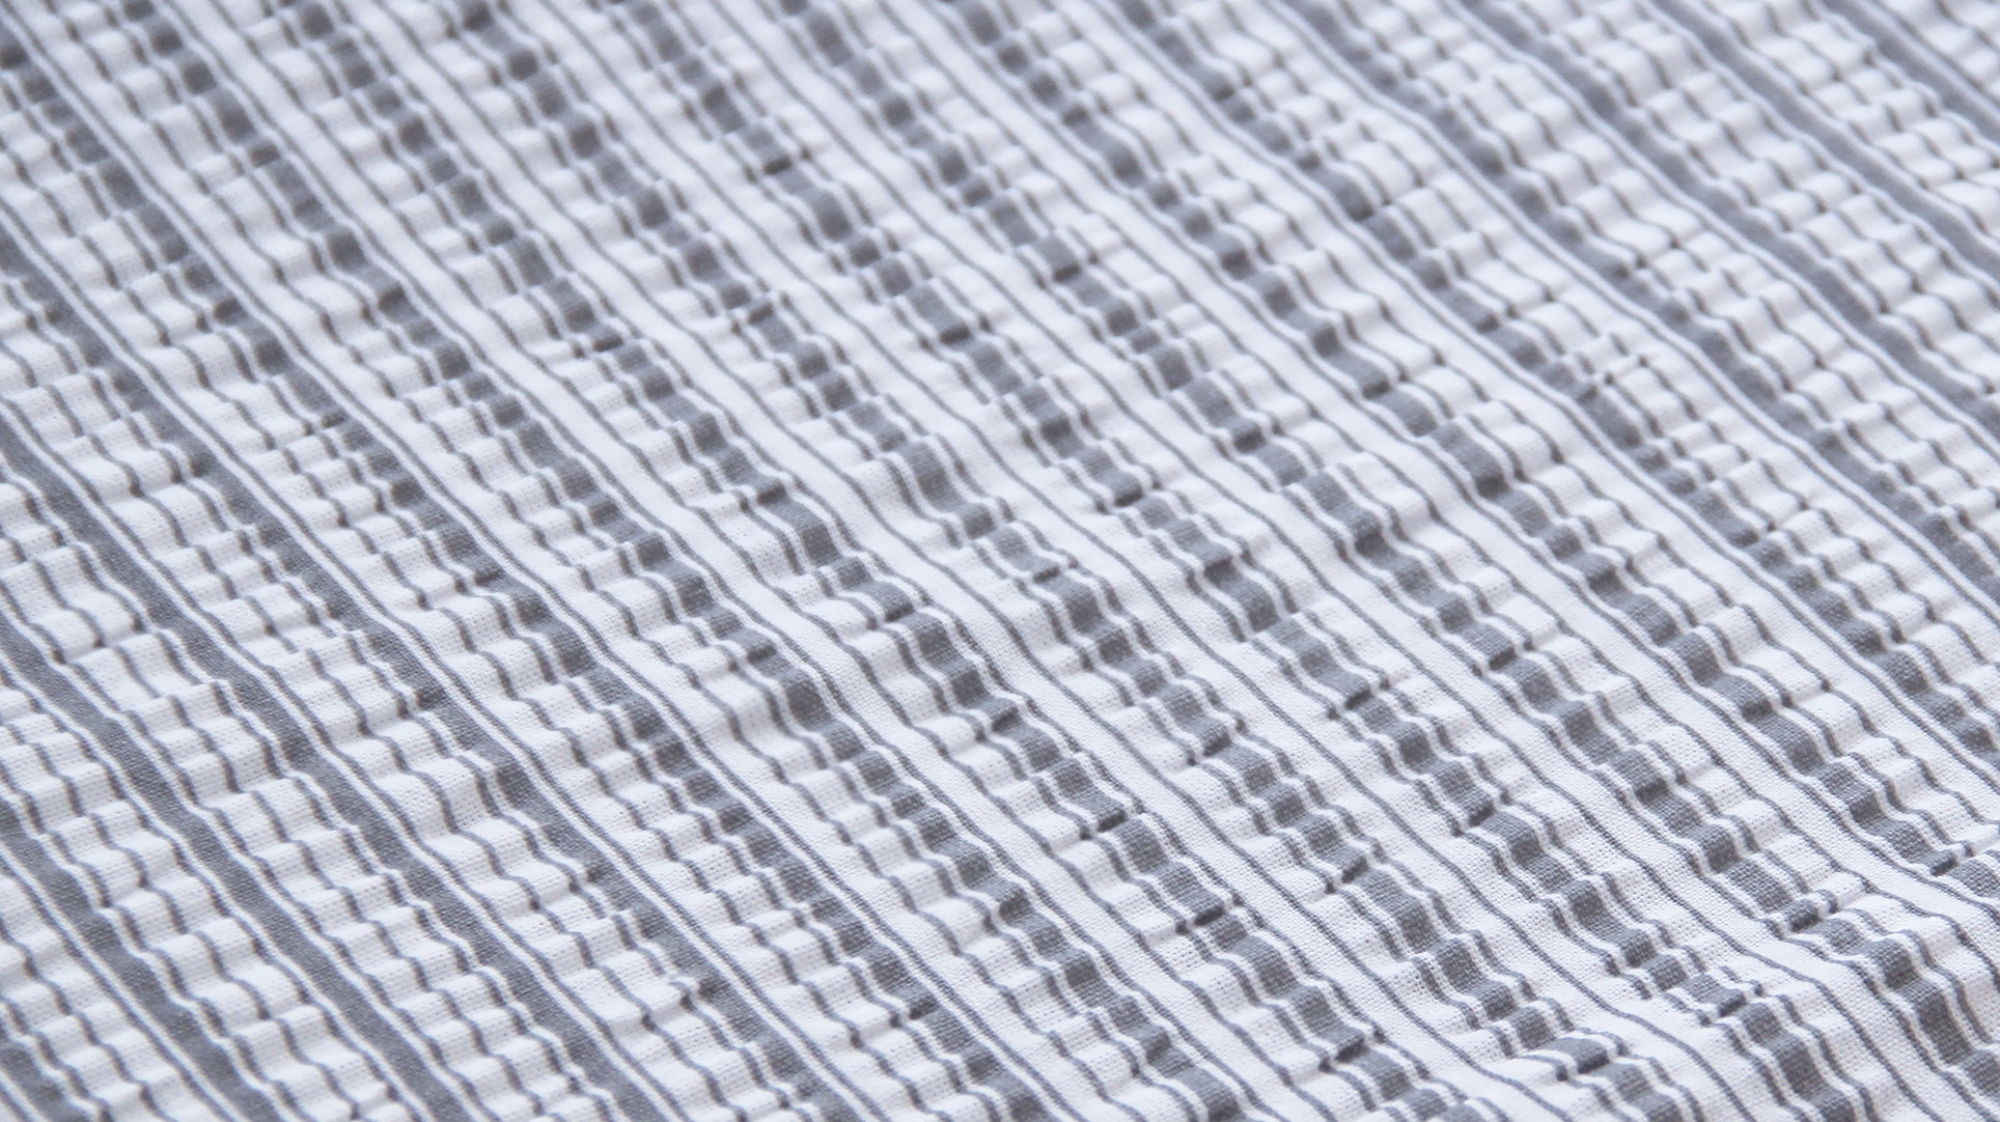 2-teilige Seersucker Bettwäsche 135x200cm und 80x80cm - grau weiß gestreift - Bettgarnitur aus 100% Baumwolle, bügelfrei (BS-Streifen)